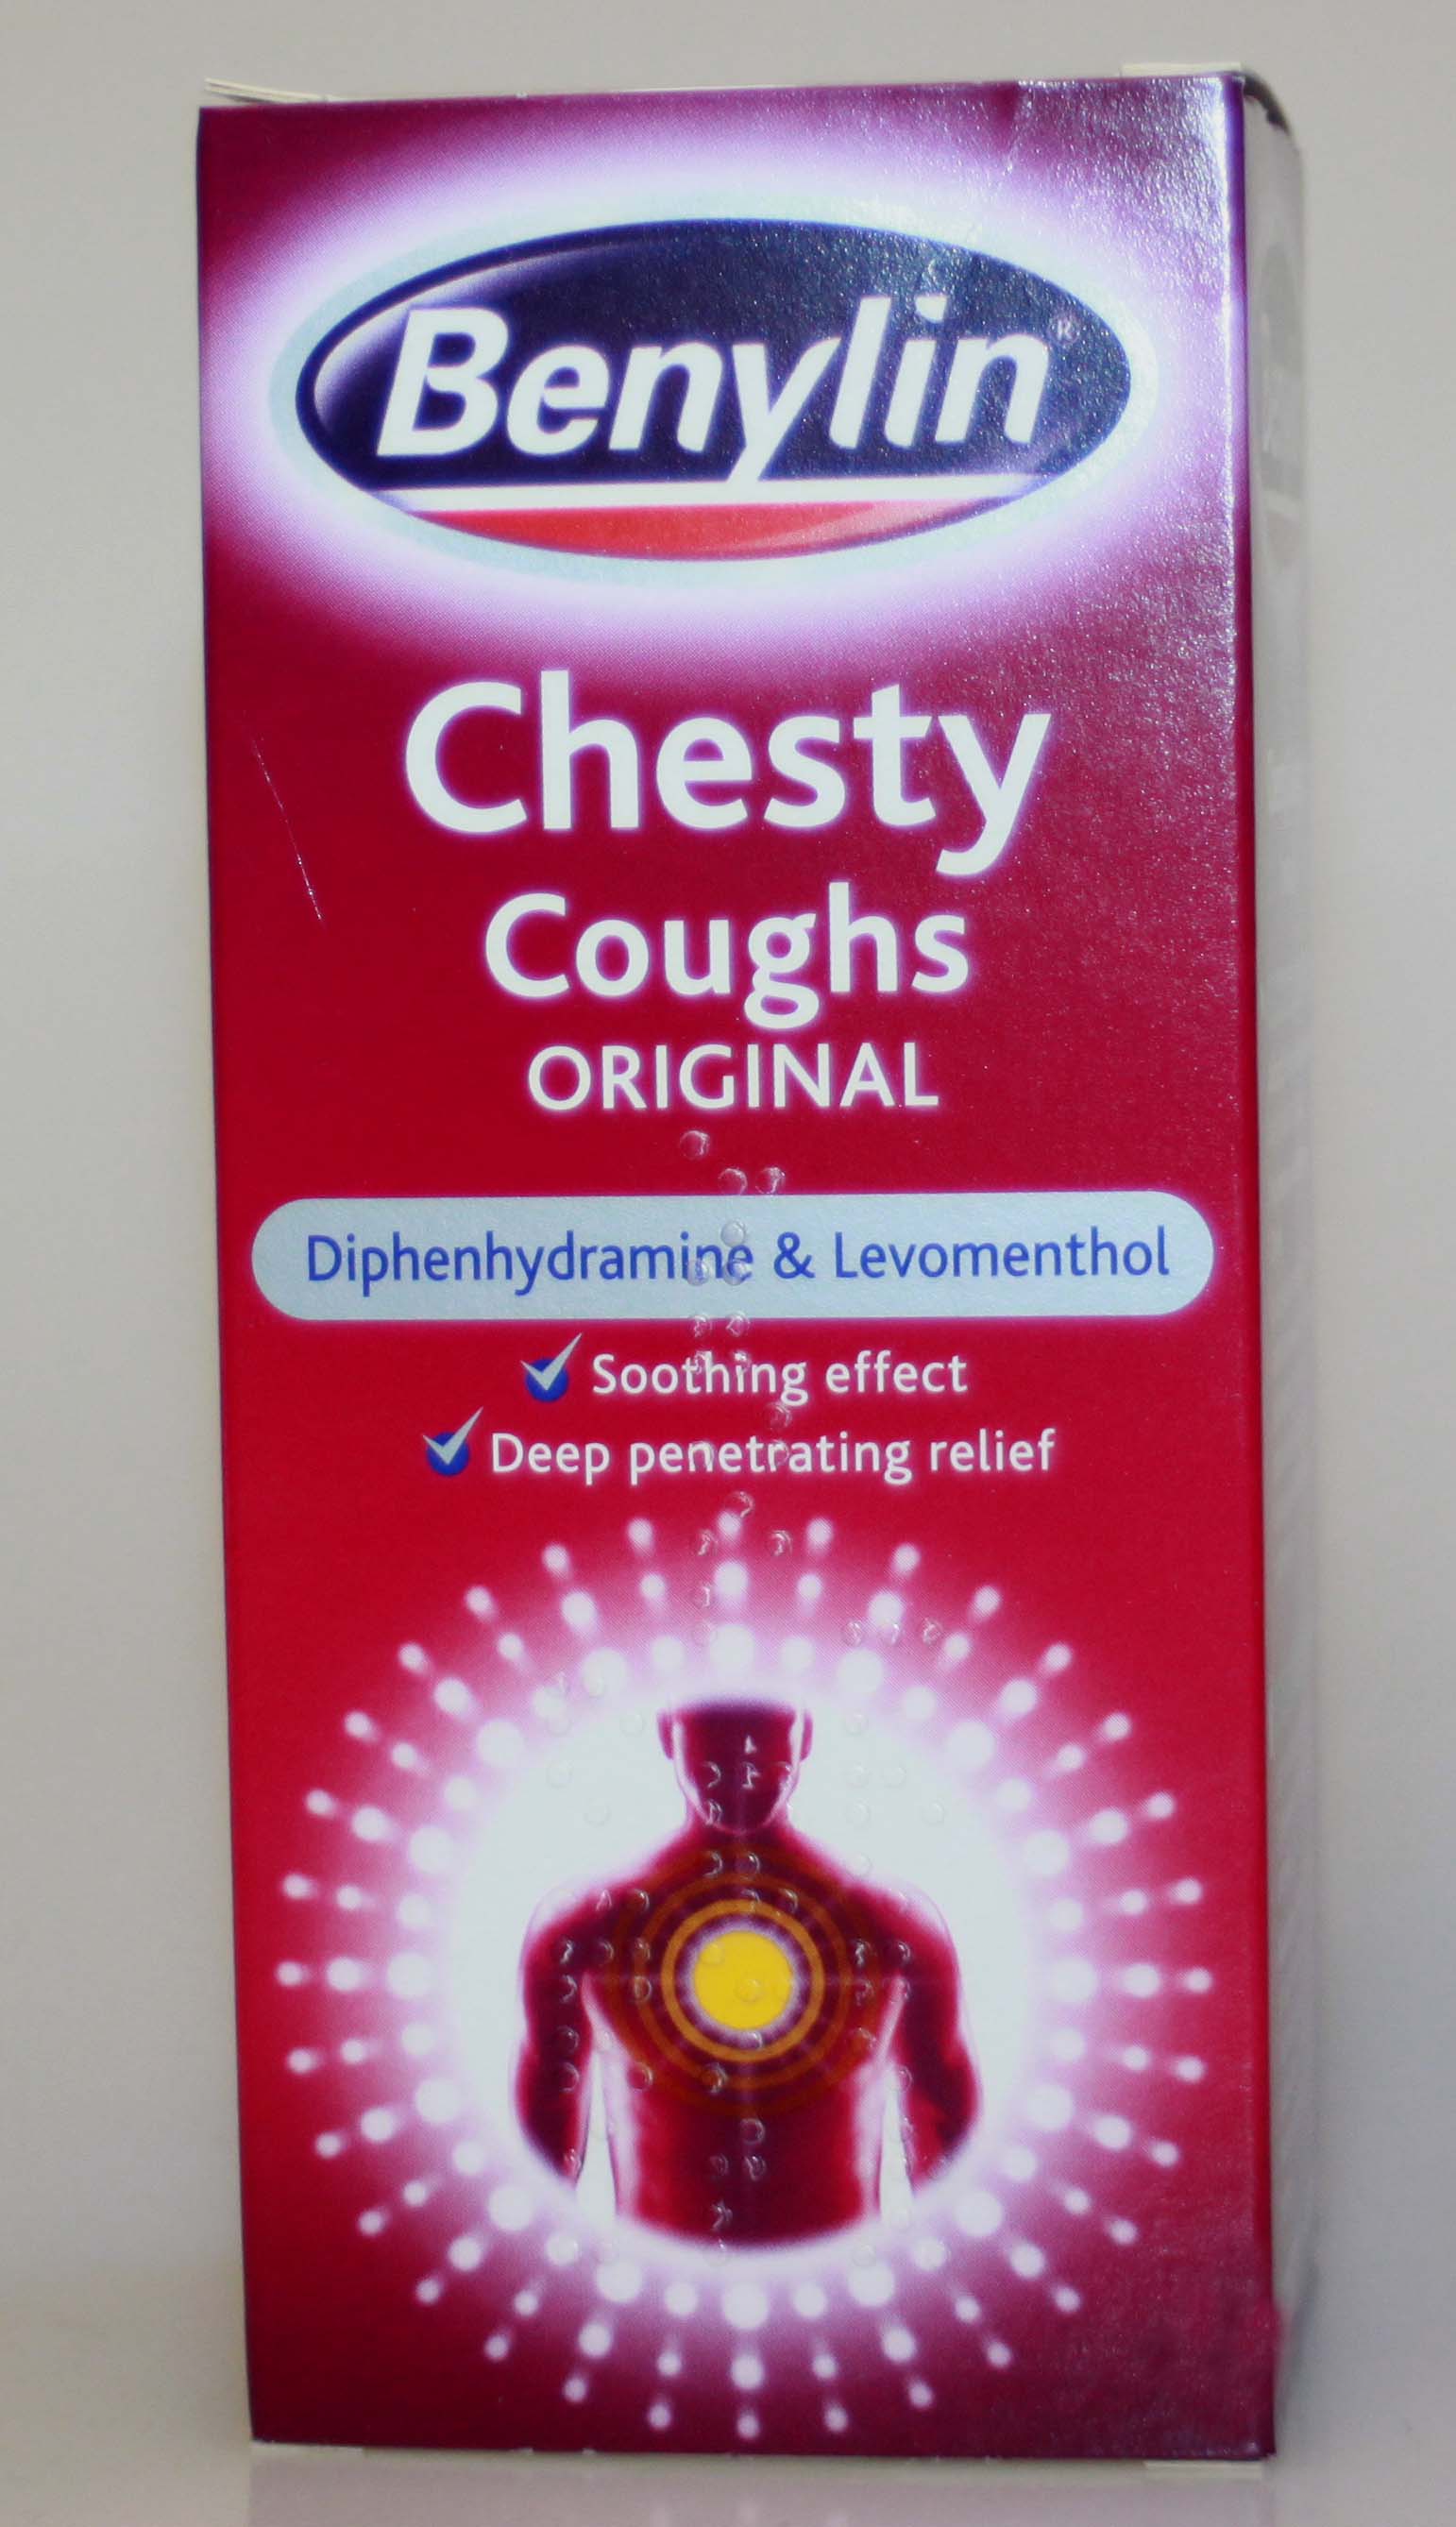 Benylin Chesty Coughs Original - 300 ml